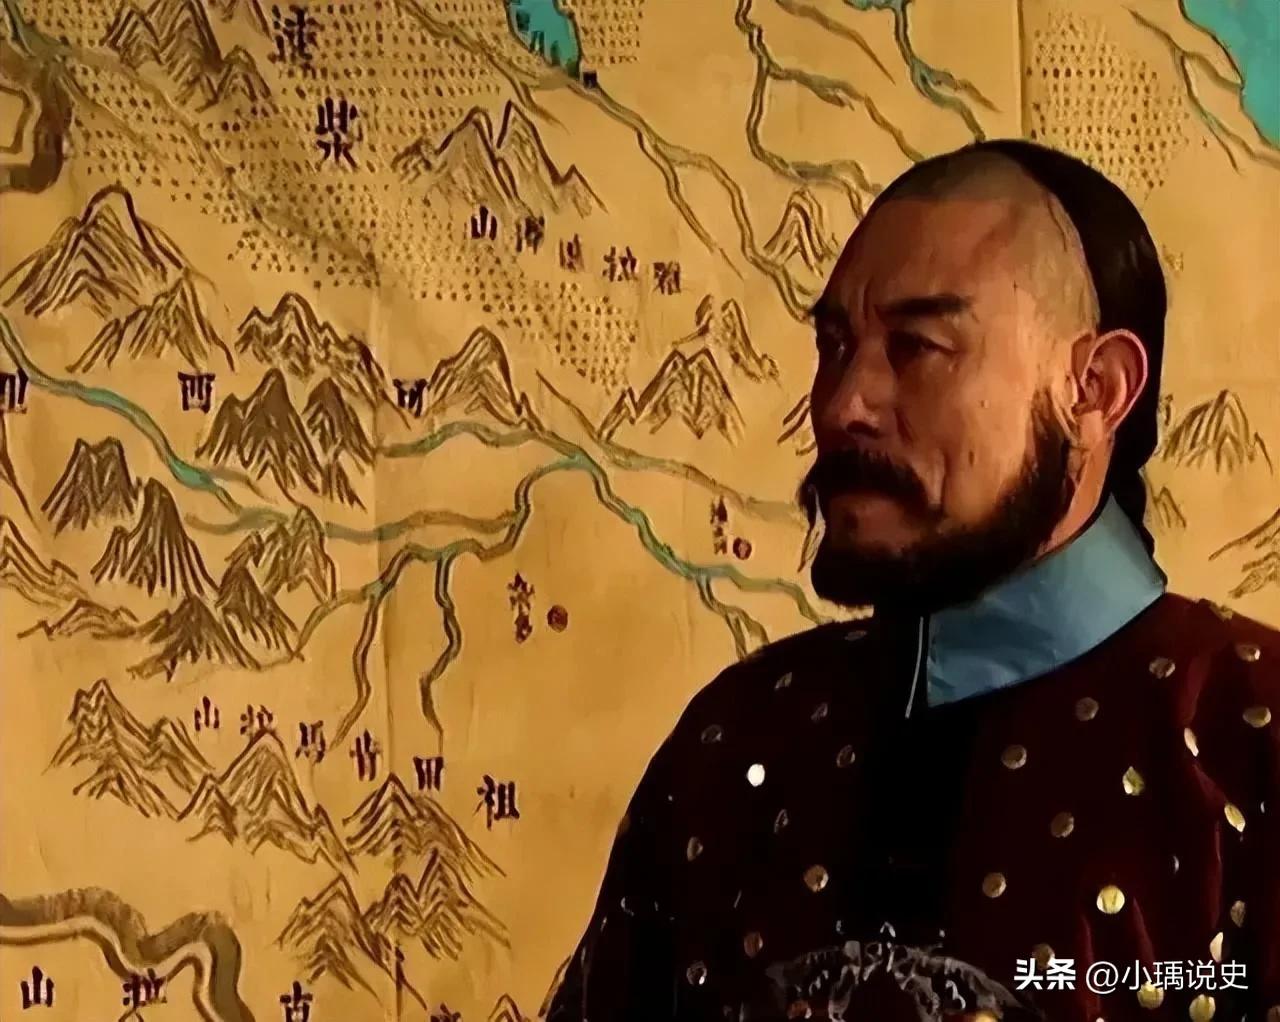 罗布藏丹津之战,清朝雍正平定罗卜藏丹津叛乱